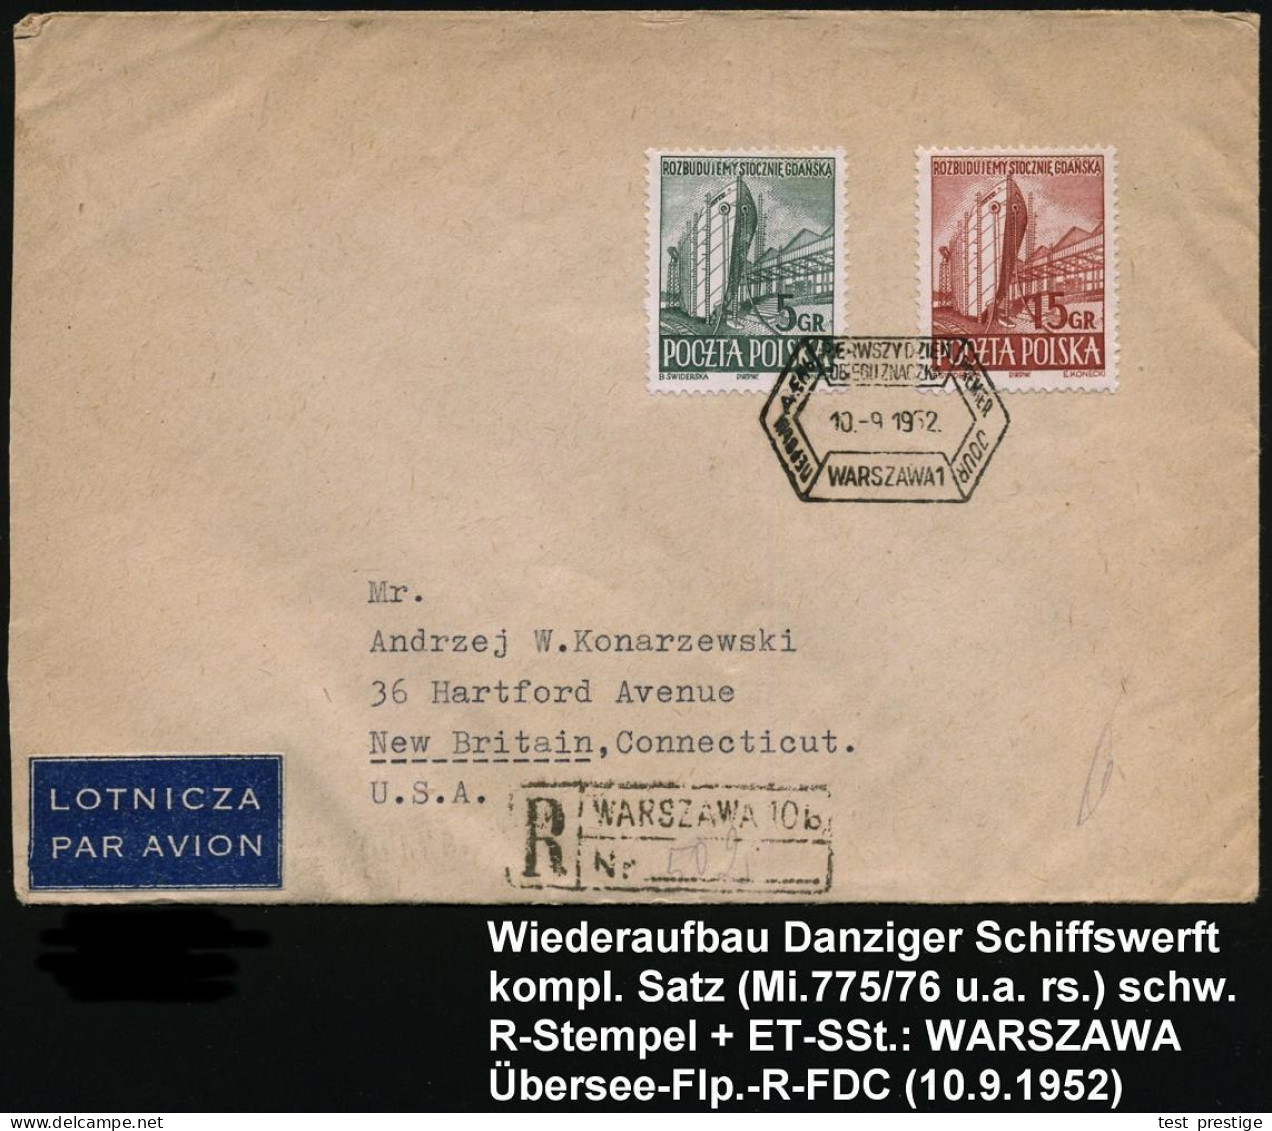 POLEN 1952 (10.9.) Wiederaufbau Danziger Schiffswerft, Kompl. Satz  (u.a. Rs.) + ET-SSt.: WARSZAWA 1 + Schw. R-Stempel:  - Maritime